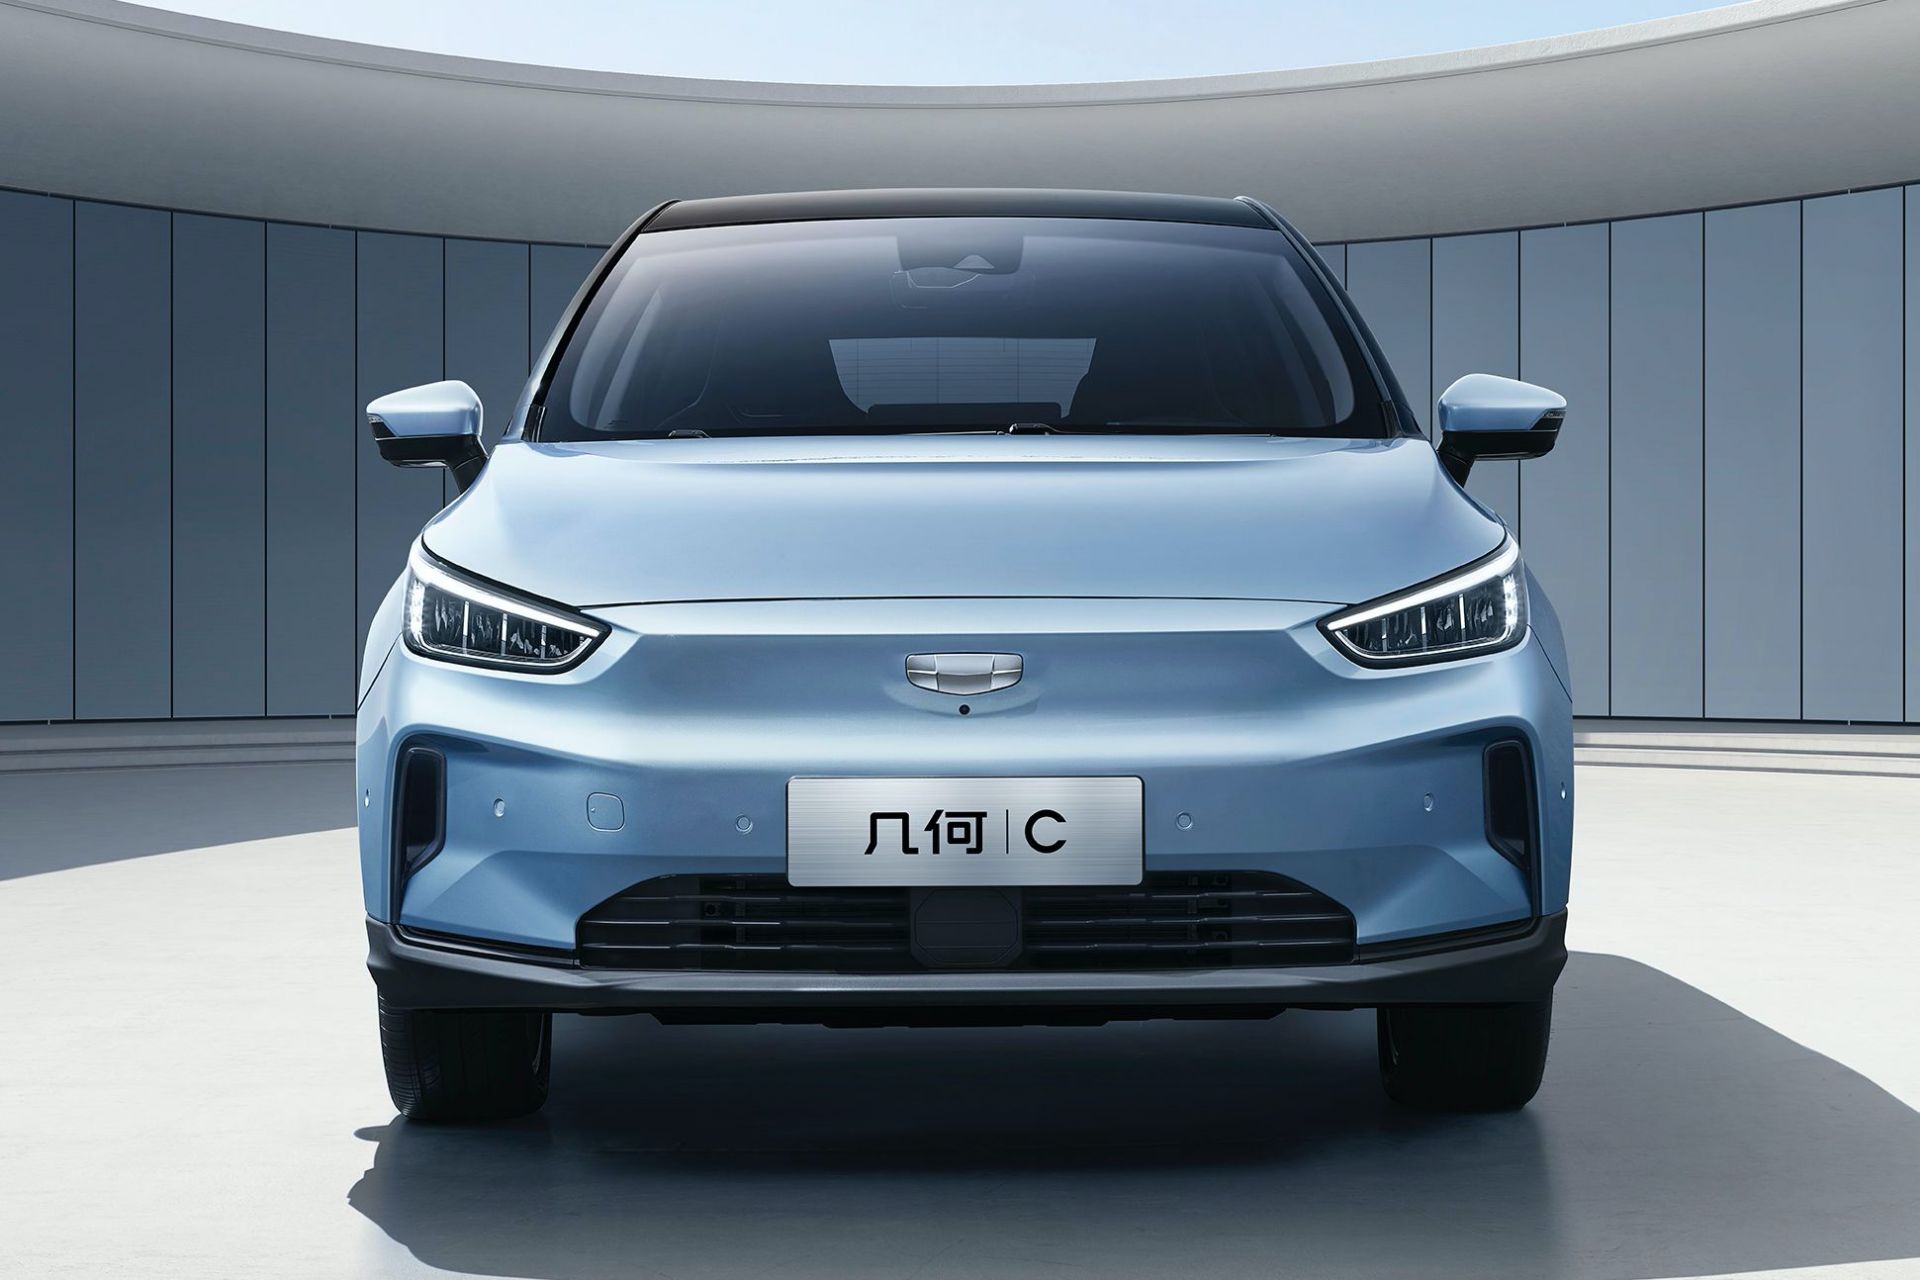 Çinli Geely'nin elektrikli araç markası ikinci modelini tanıttı: Geometry C